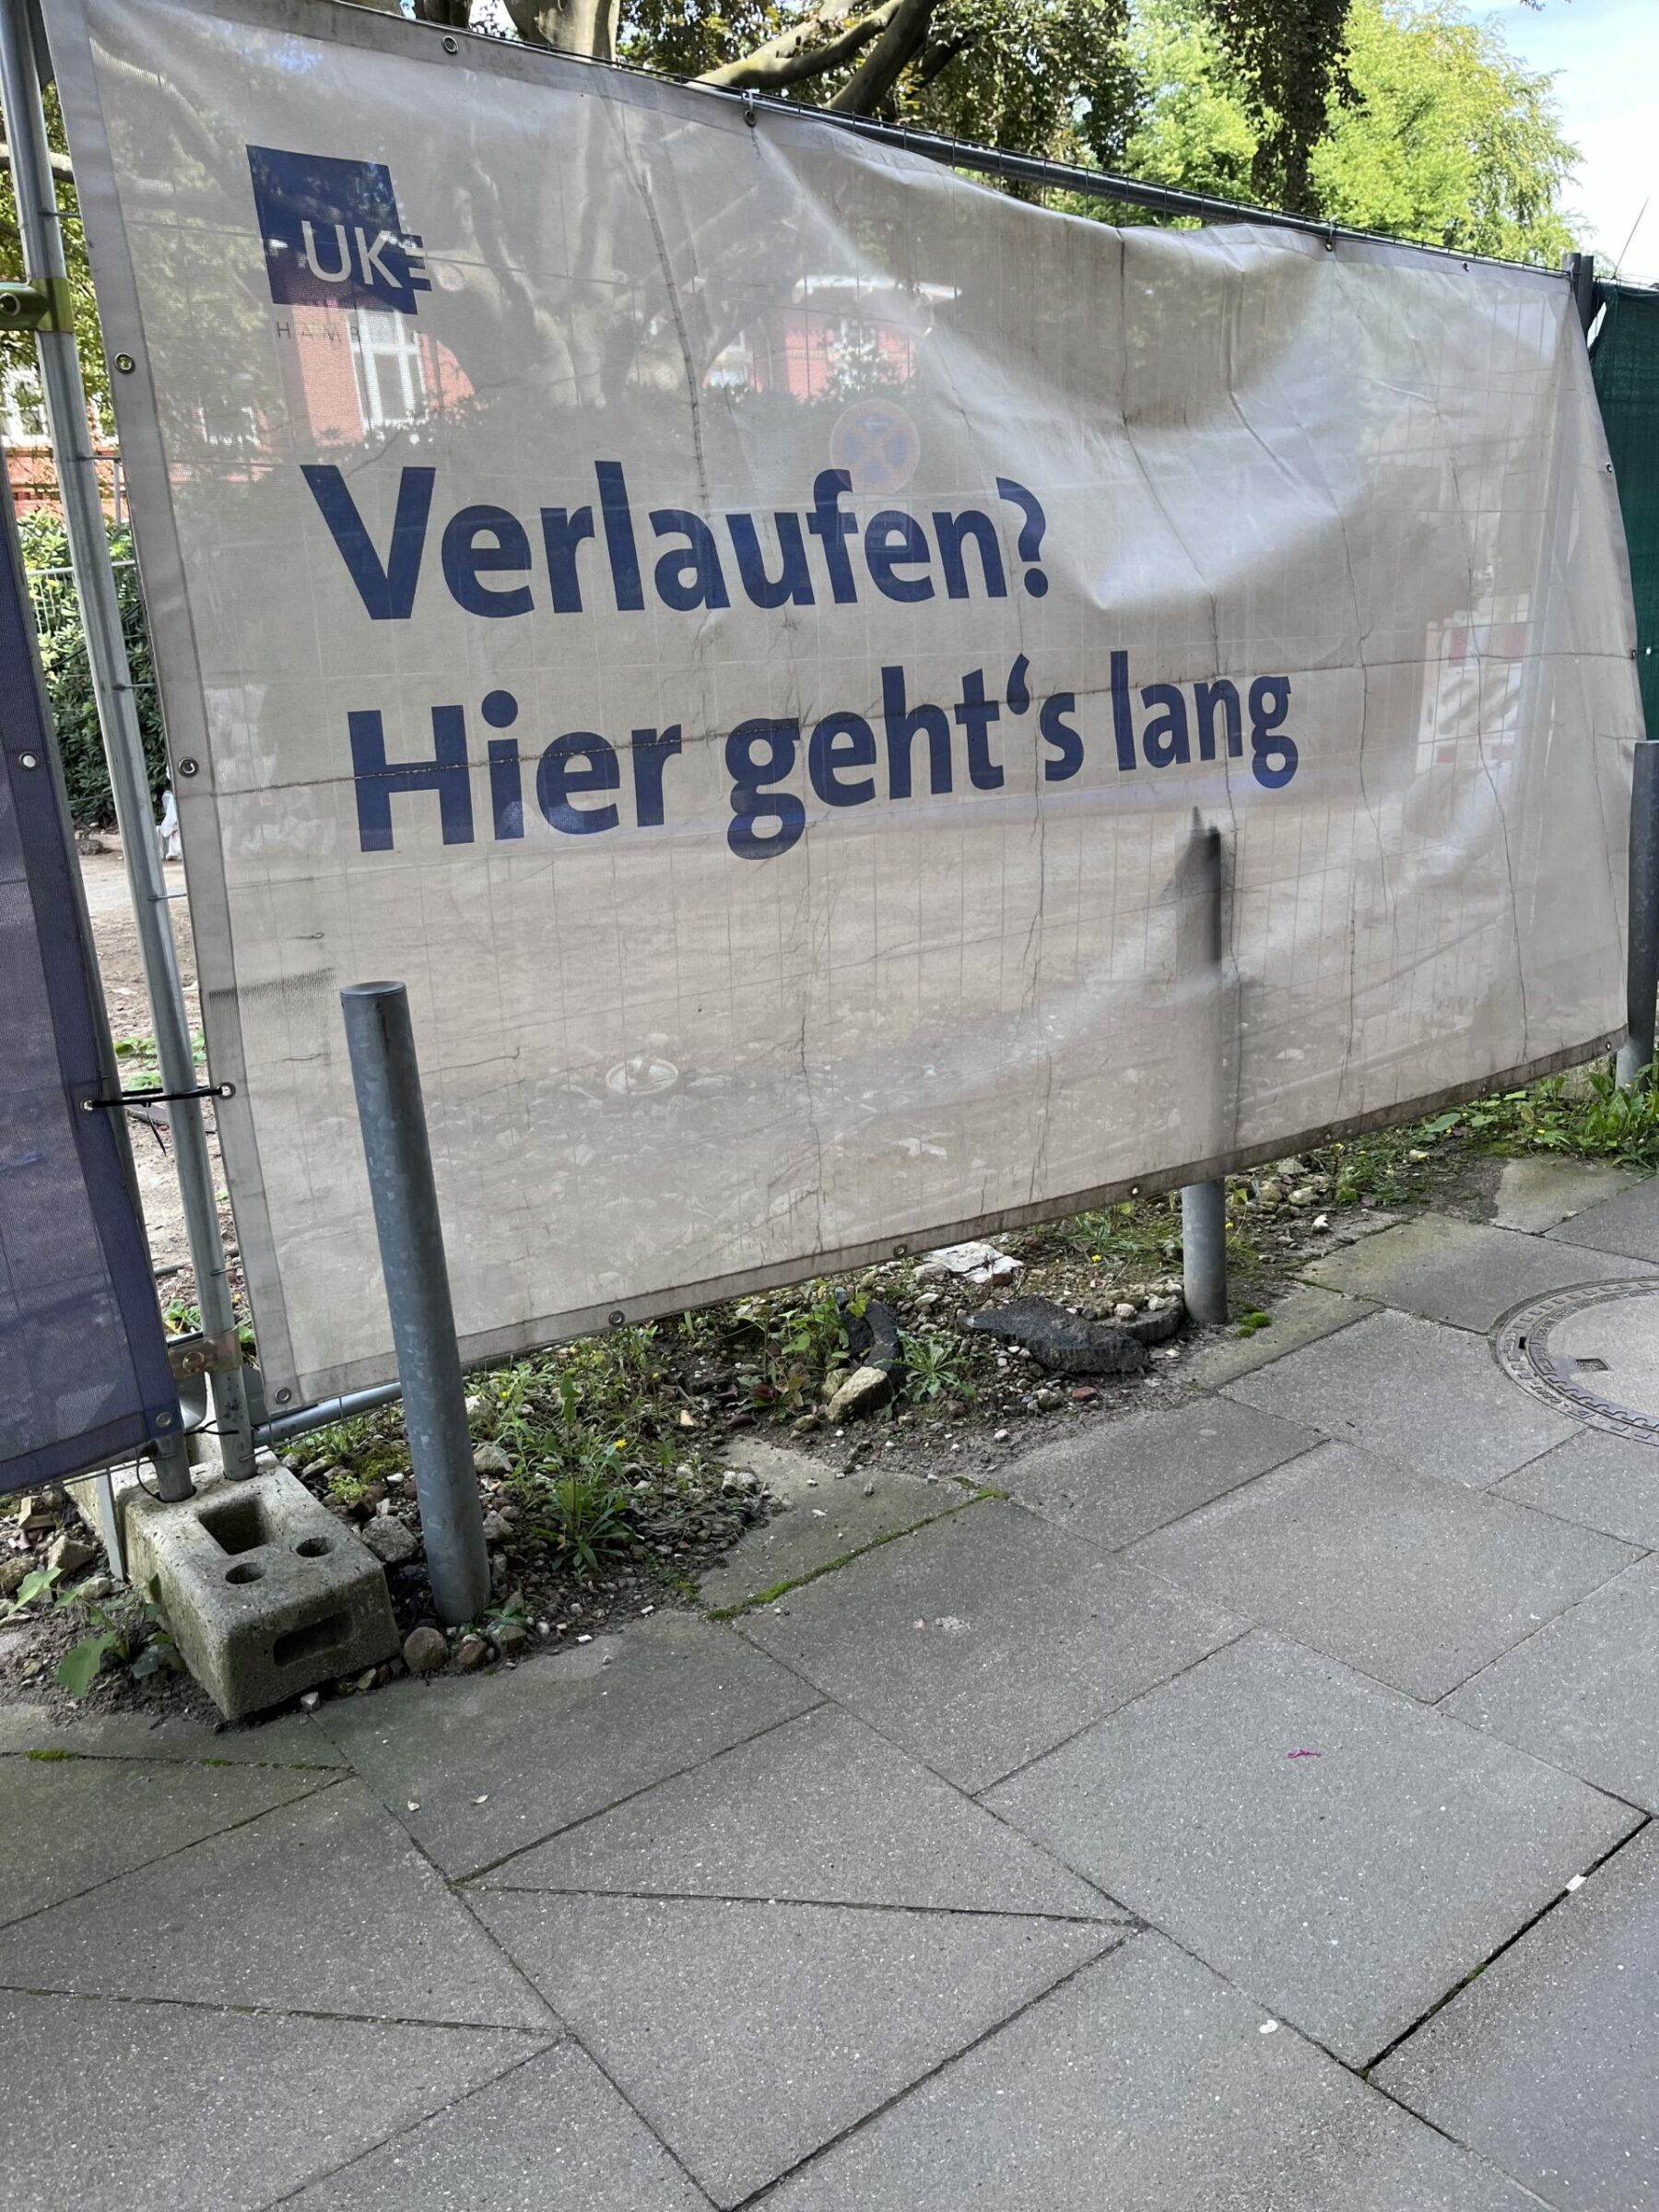 Baustellenabdeckung am Zaun mit Beschriftung: "Verlaufen? Hier geht´s lang" und "UKE"